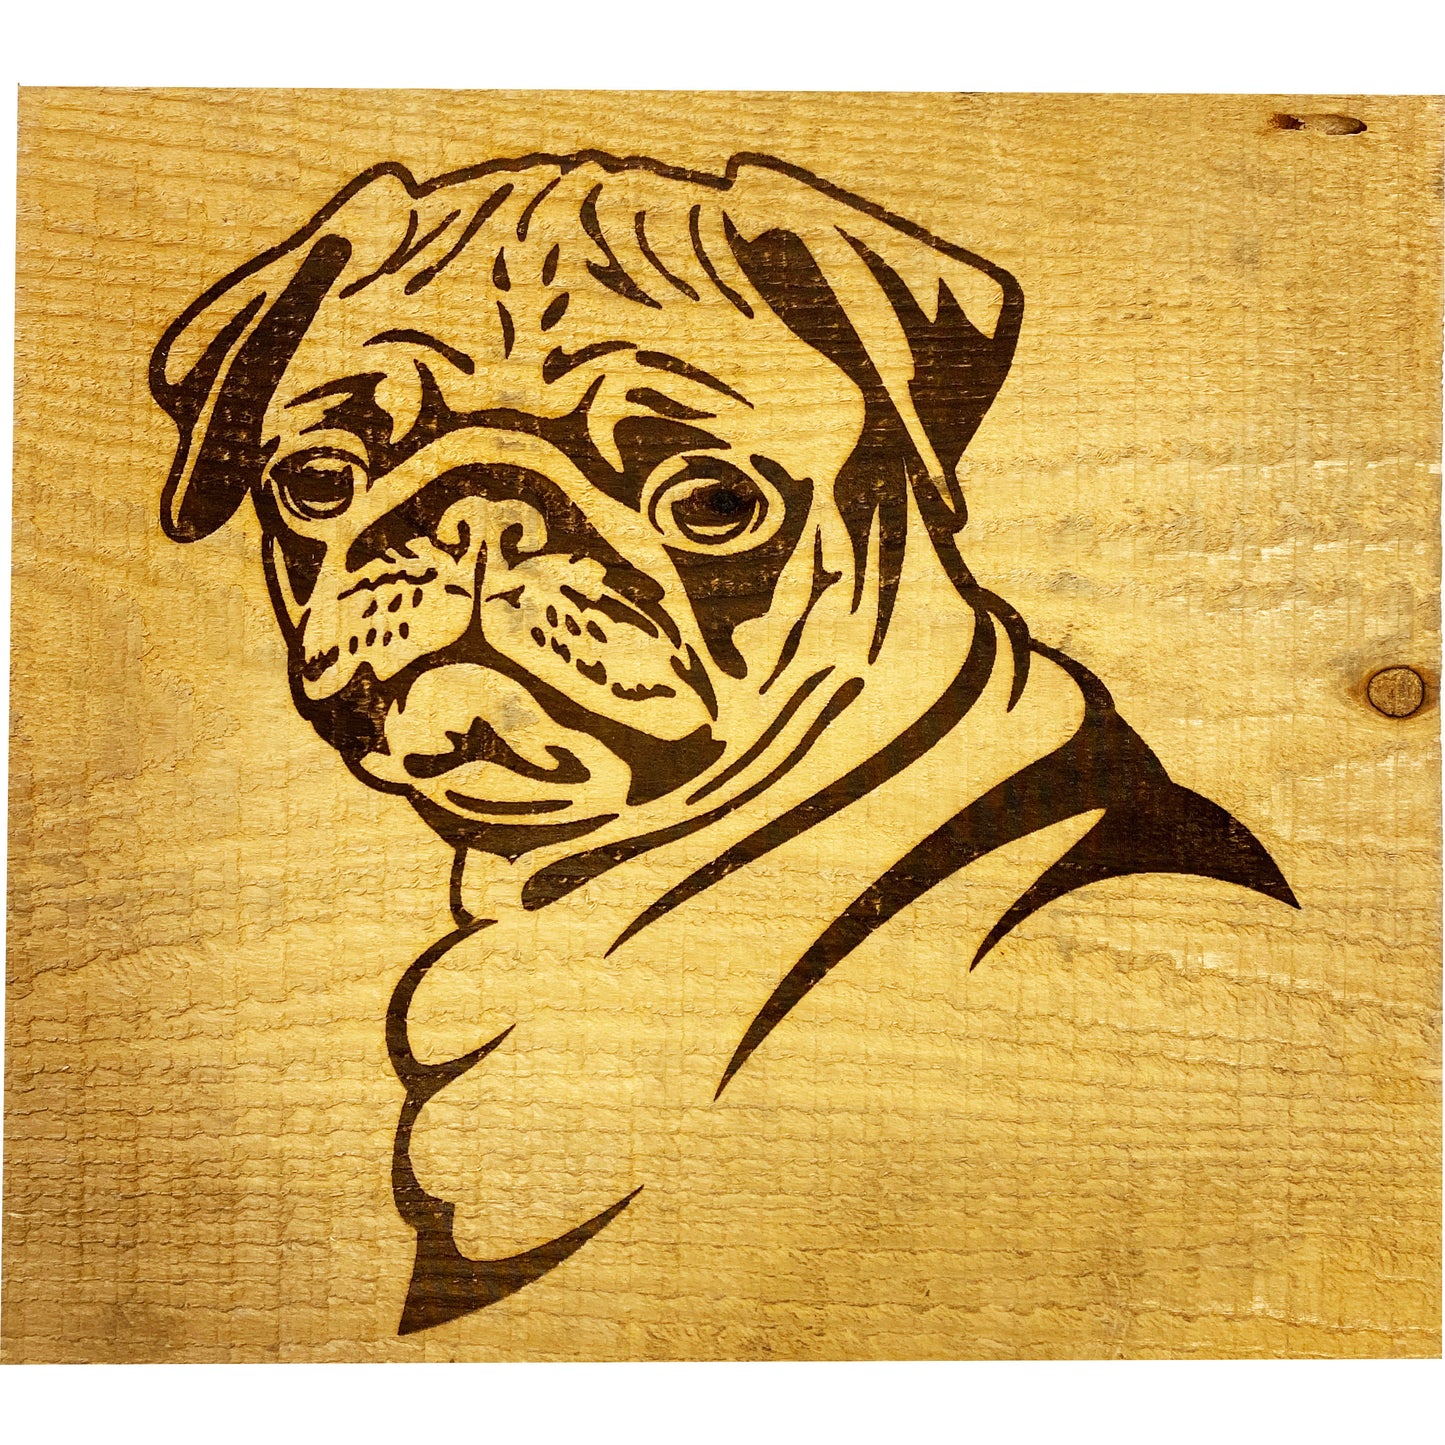 Etched Wood Burning, Original Fine Art, Pug Dog, 14 x 12.5" made by Lukas Miller